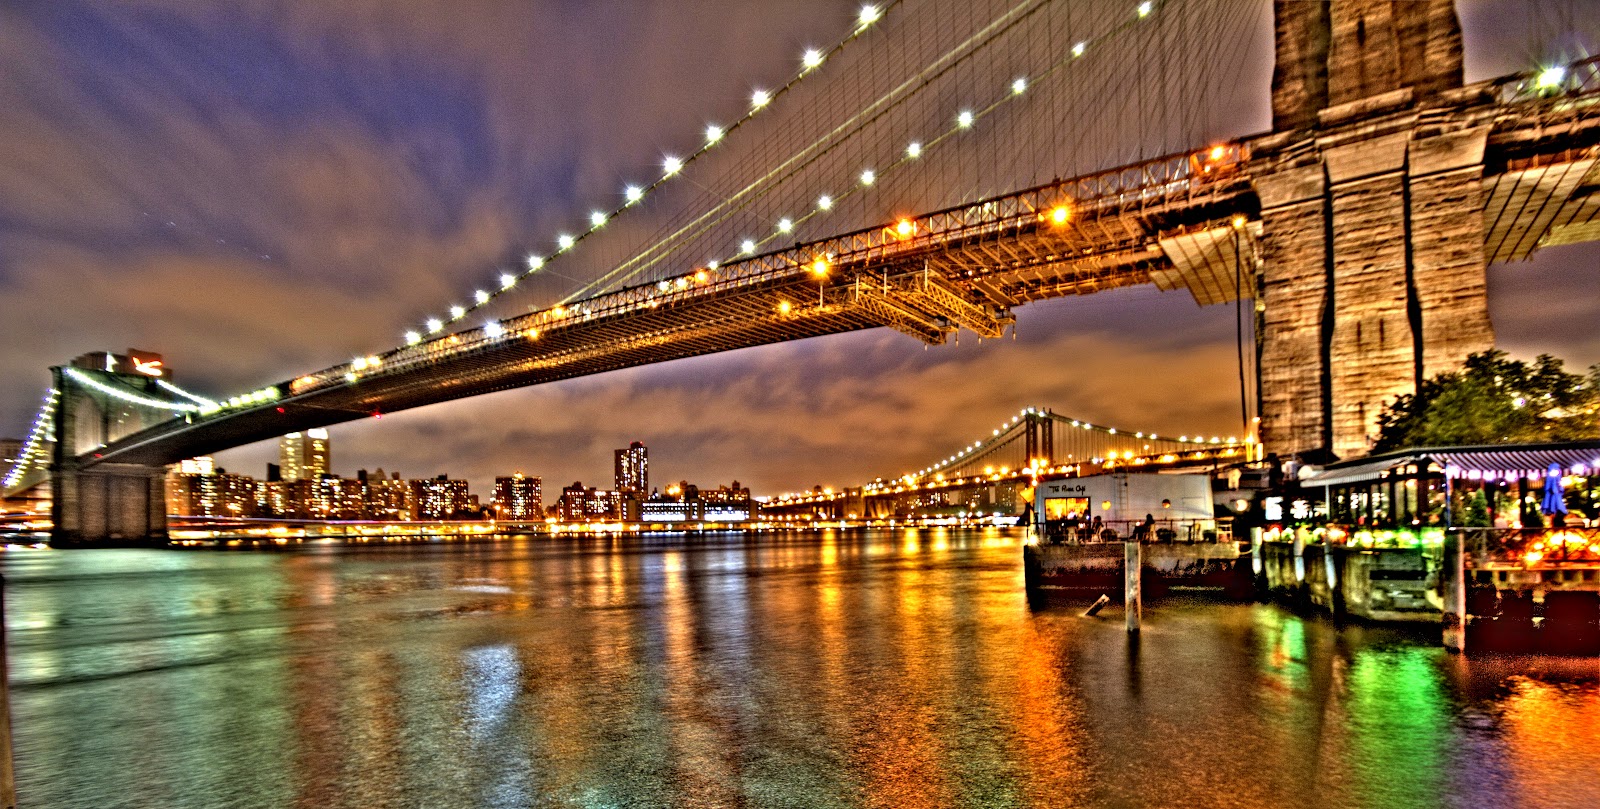 Lo que el ojo no ve.: Puente de Brooklyn